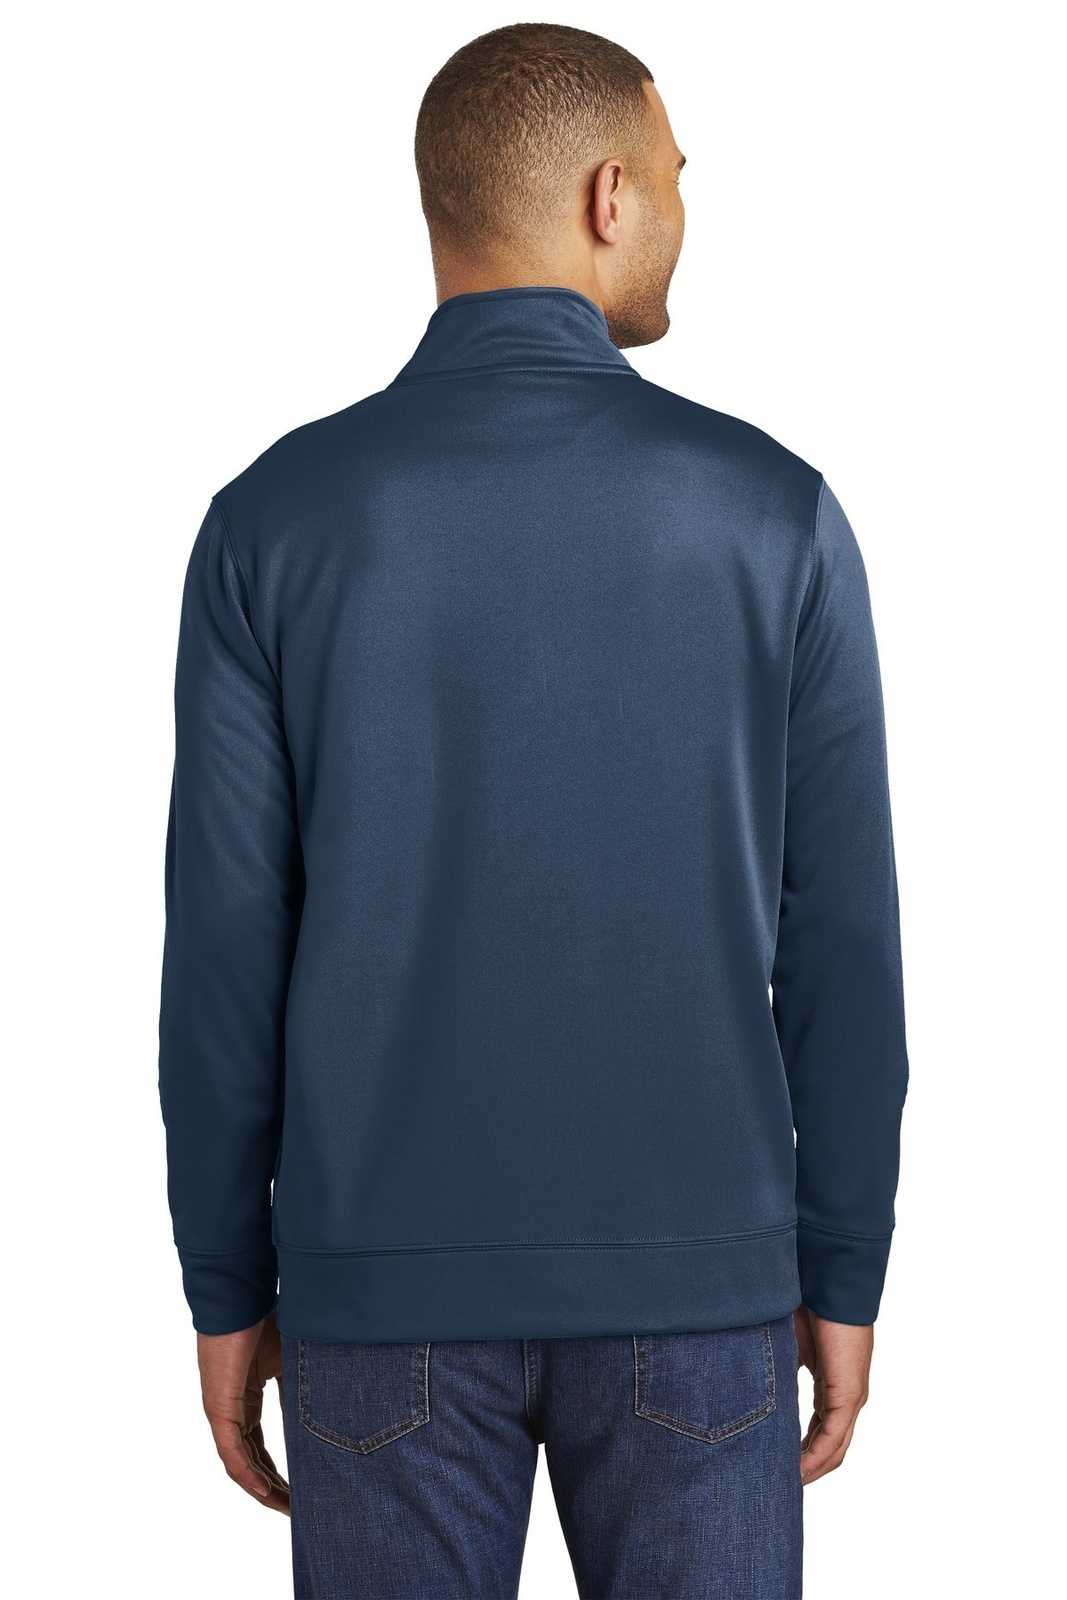 Port & Company PC590Q Fleece 1/4-Zip Pullover Sweatshirt - Deep Navy - HIT a Double - 1